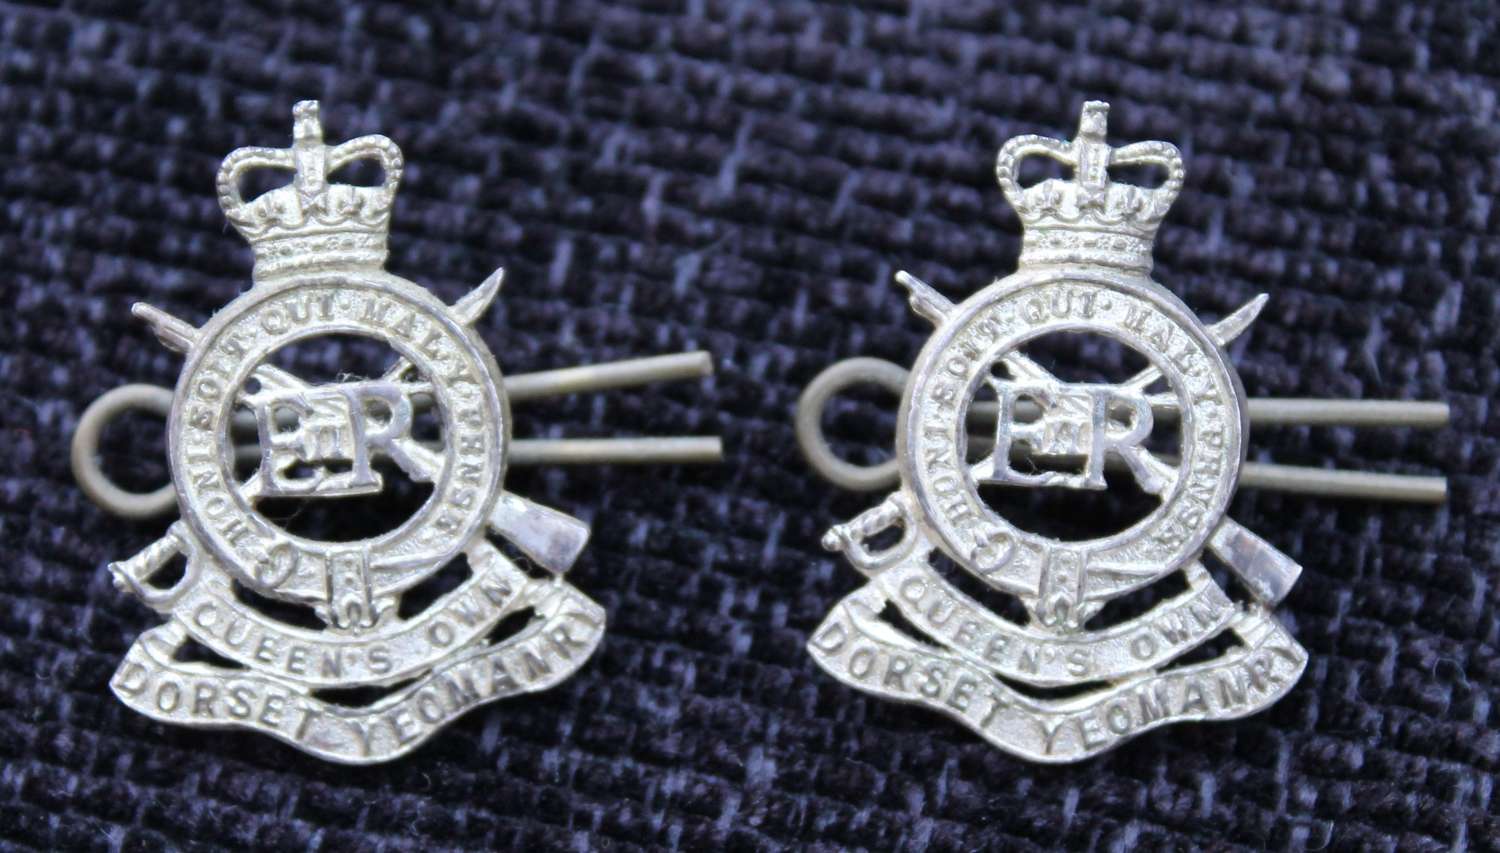 Queen's Own Dorset Yeomanry Collars.